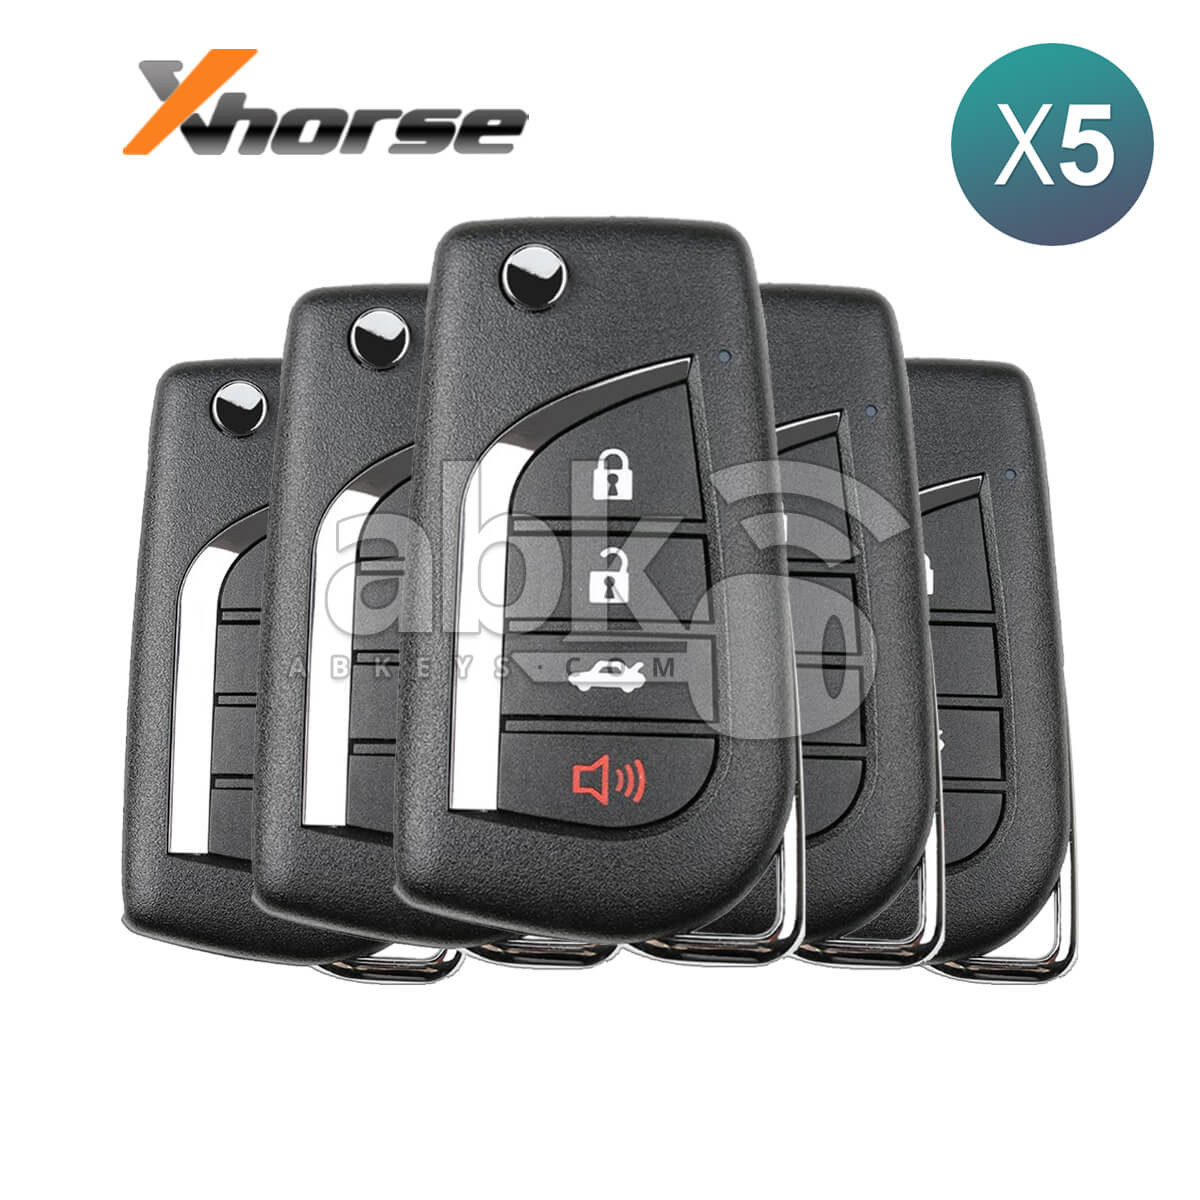 Xhorse VVDI Key Tool Toyota Style Wired Flip Remote 4Buttons XKTO10EN 5Pcs Bundle -